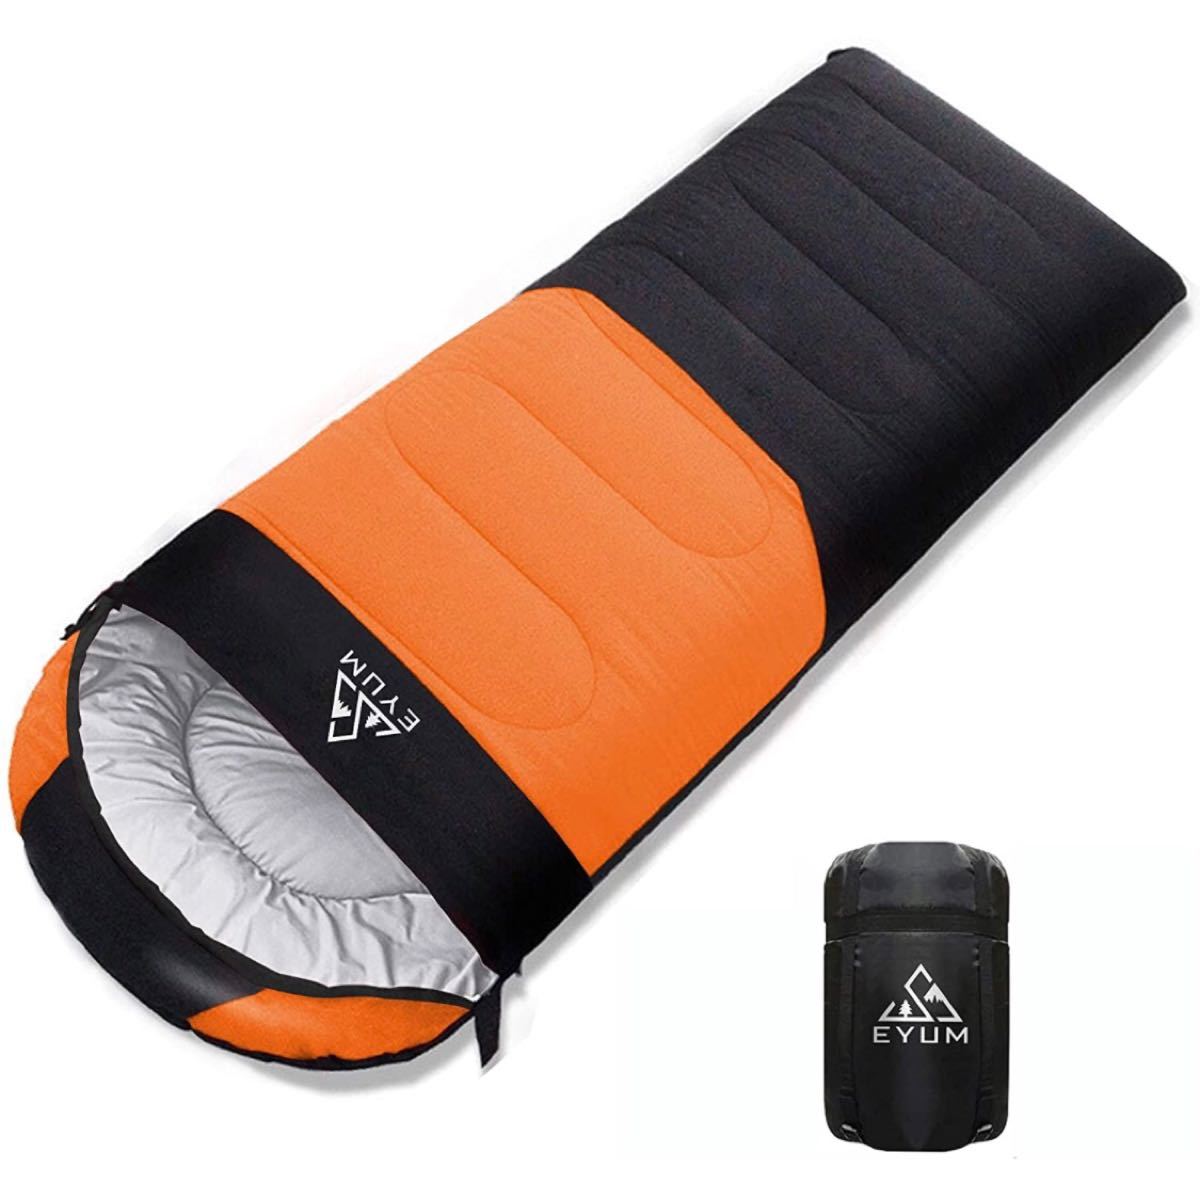  寝袋 シュラフ 封筒型 軽量 超暖かい 210T防水 コンパクト 簡単収納 